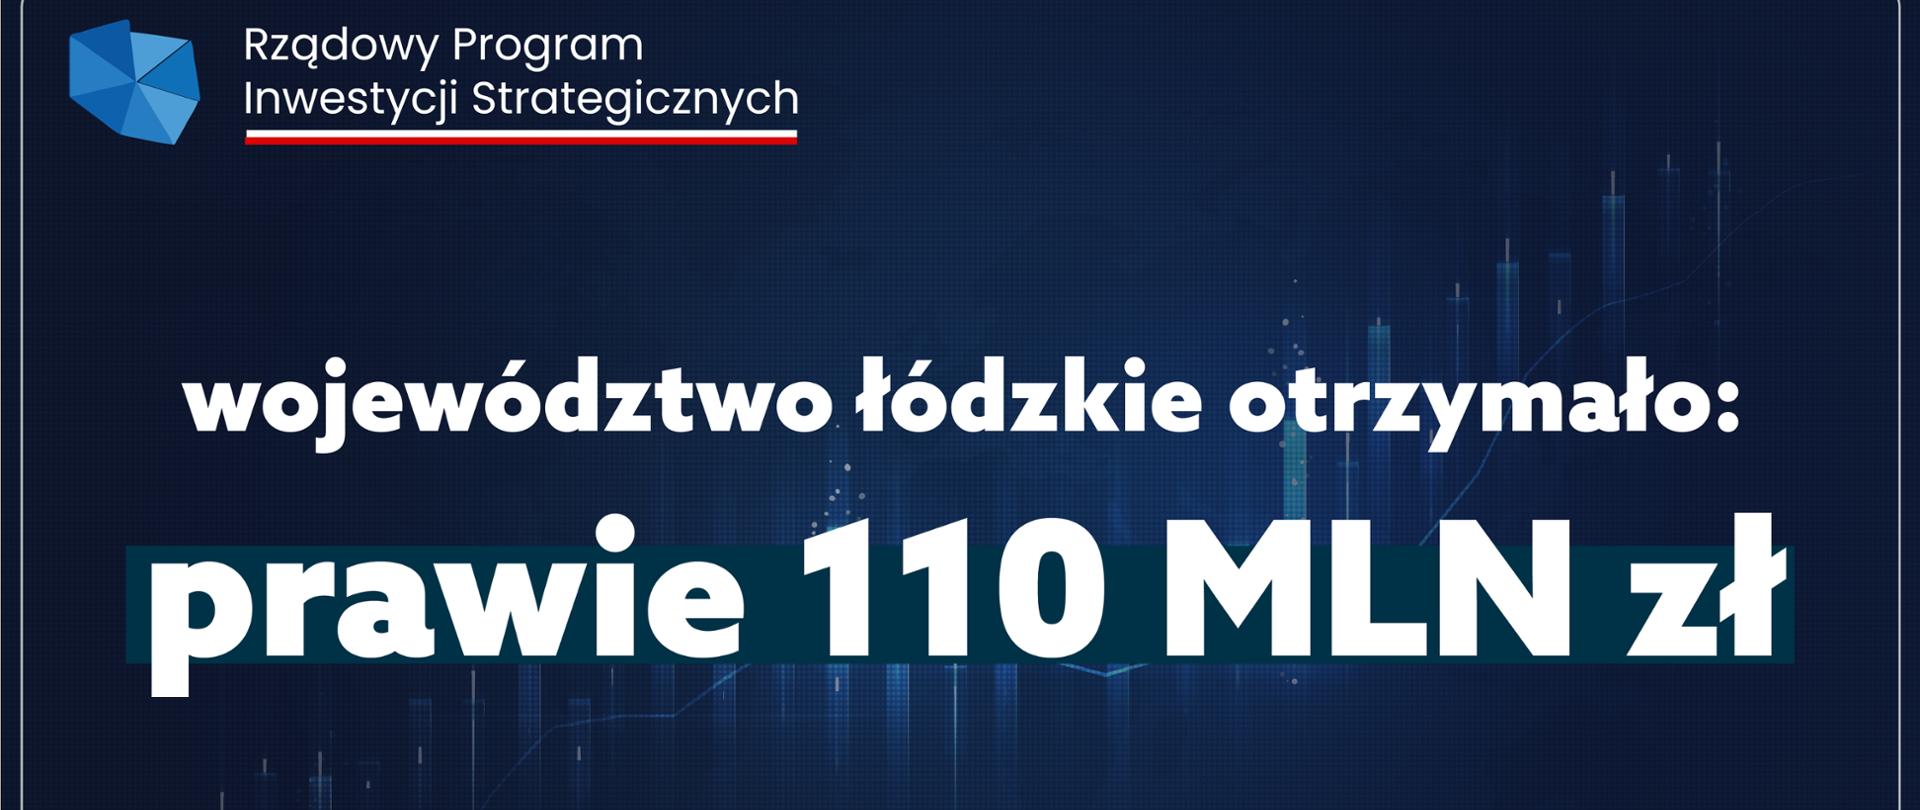 Rządowy Program Inwestycji Strategicznych zmienia Polskę. 